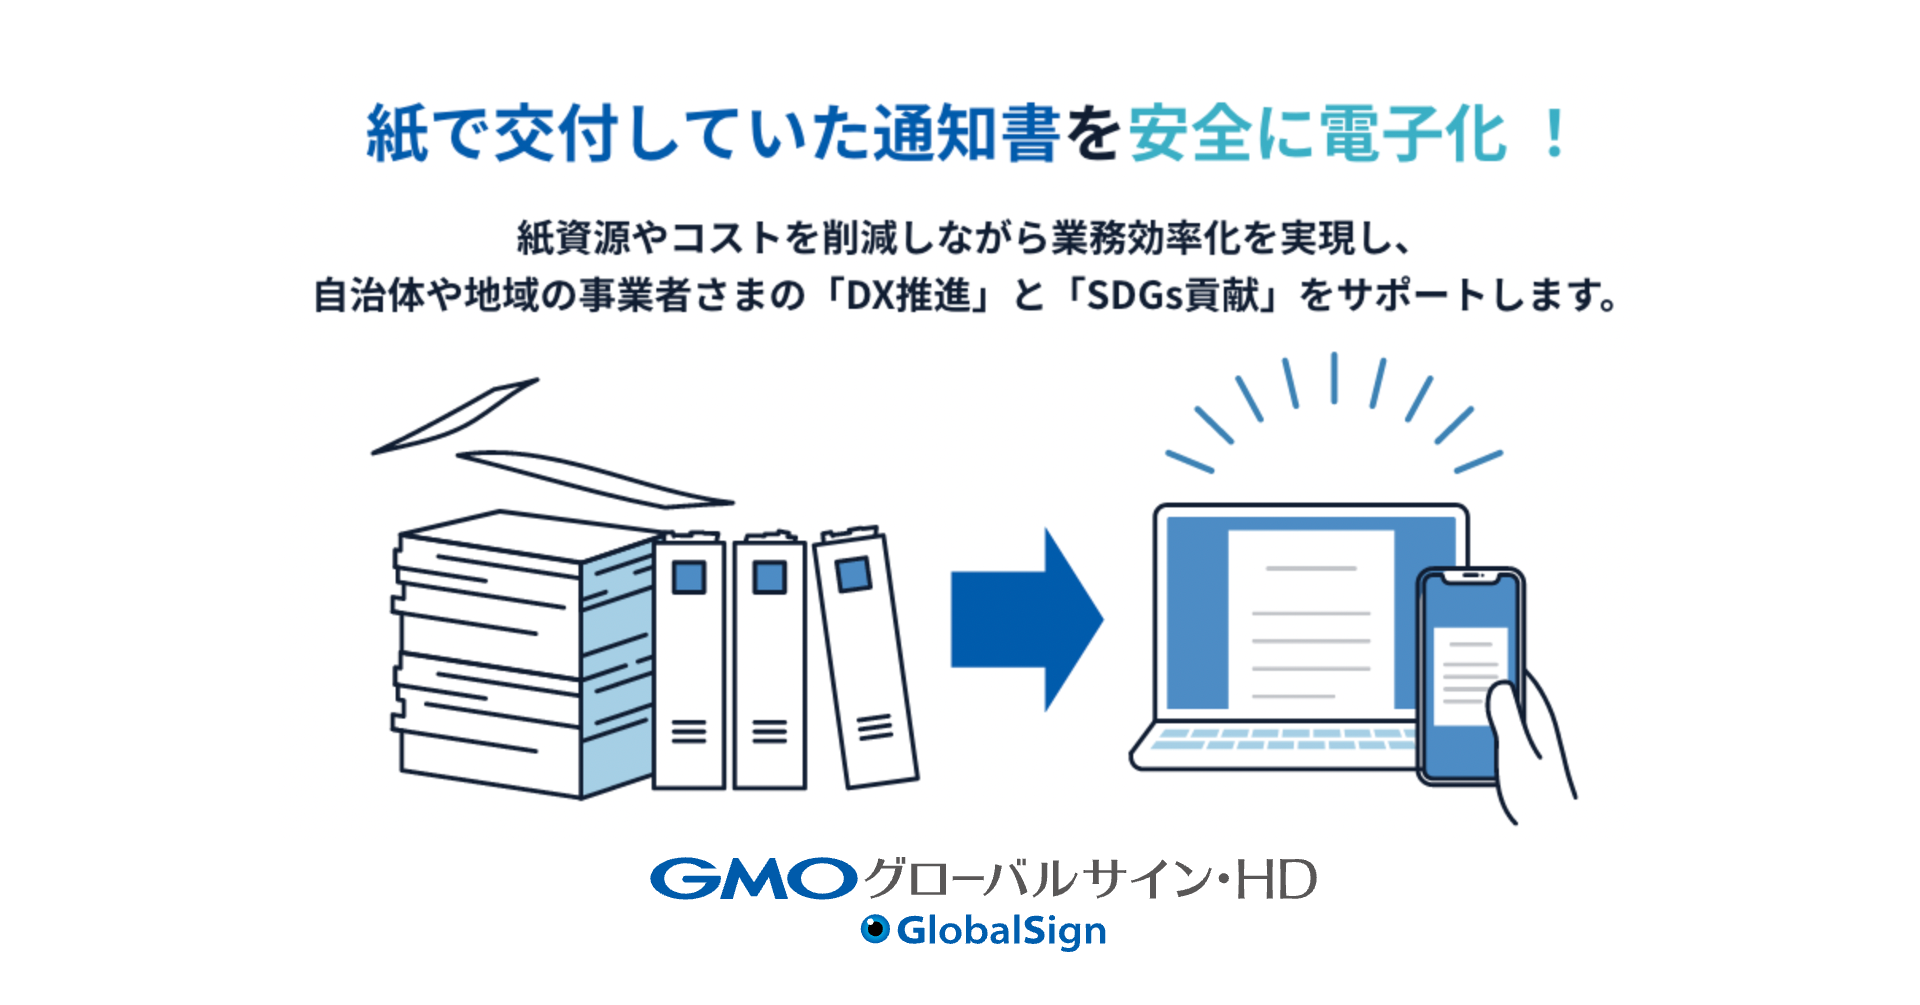 官公庁・自治体向け『GMOサイン電子交付』を提供開始 紙の処分通知等を 